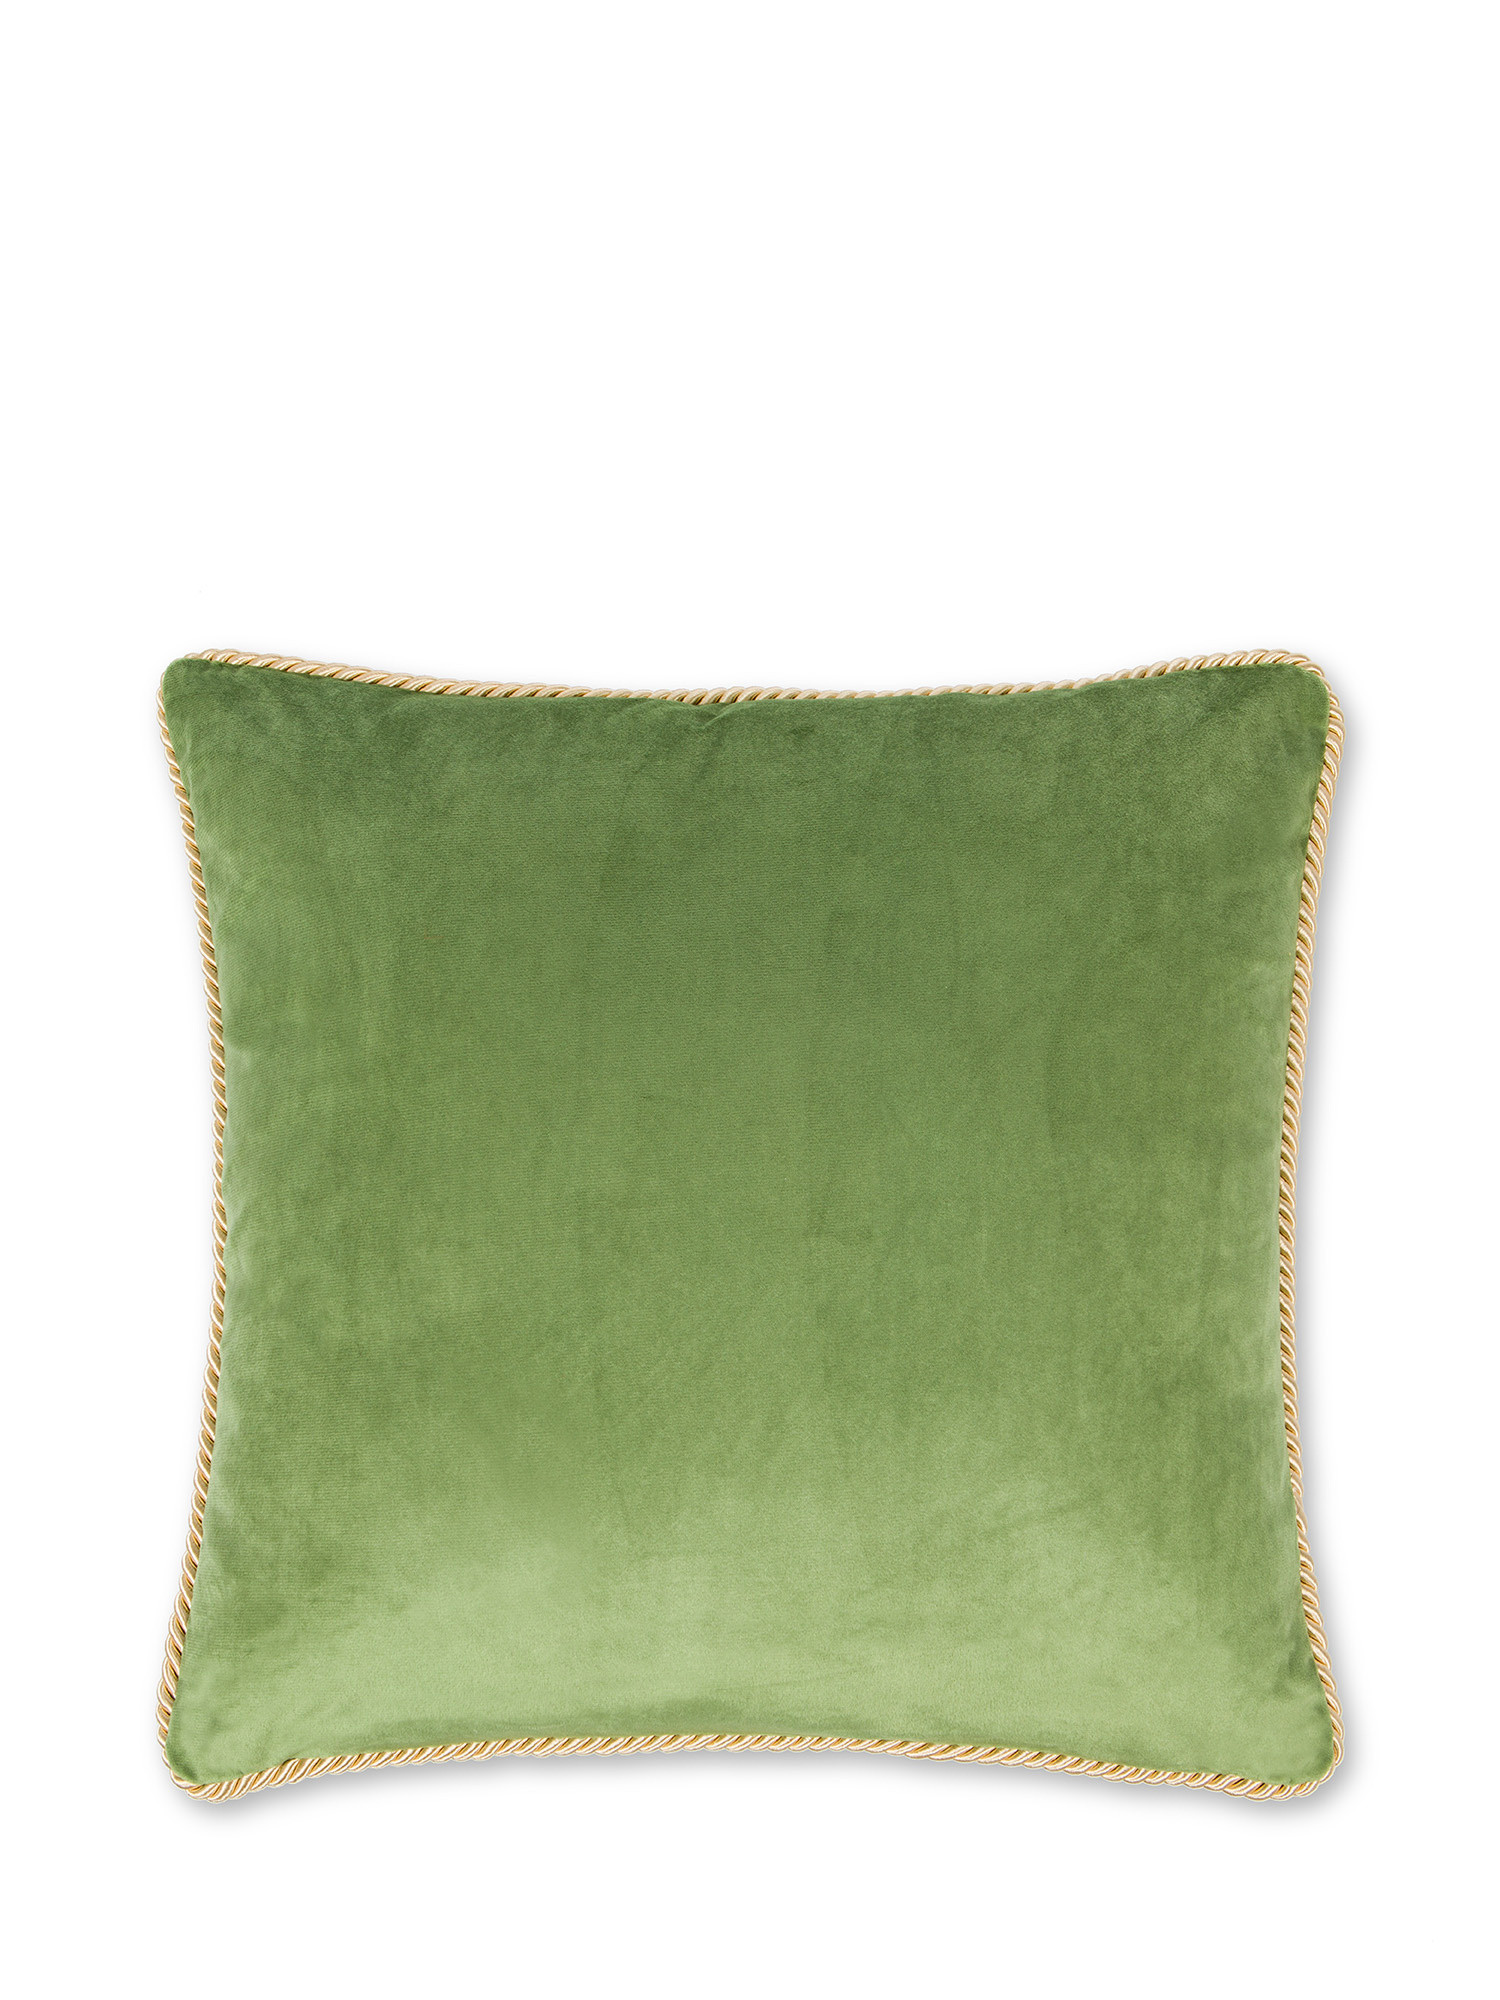 Cuscino velluto bicolore 45X45cm, Verde, large image number 0